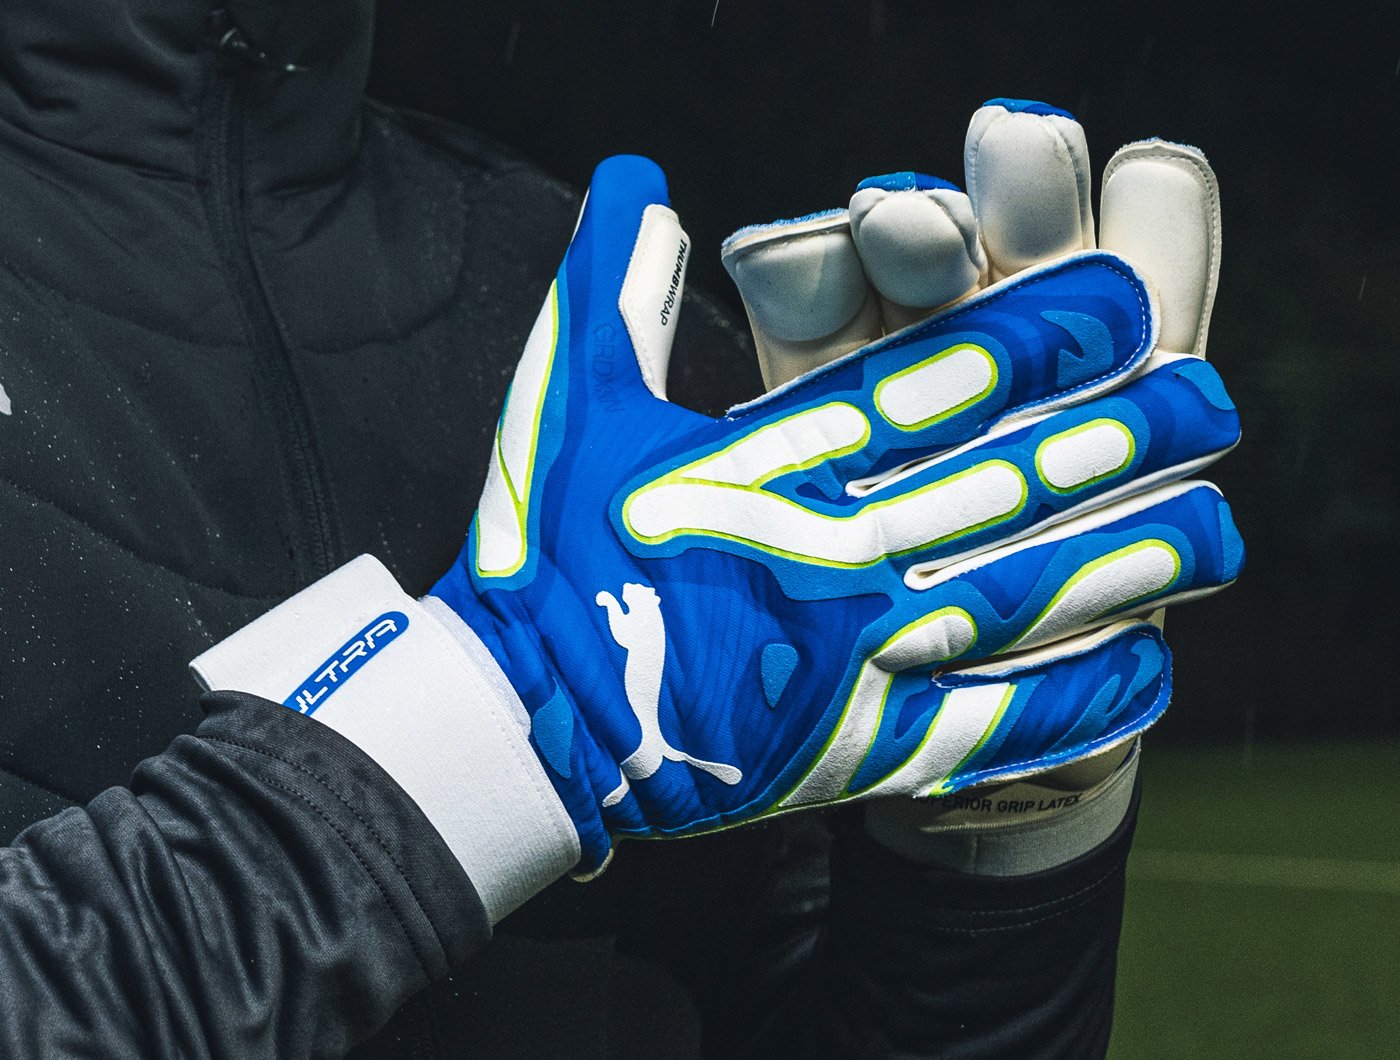 Puma Goalkeeper Gloves featuring the Puma Ultra Ultimate Glove in White & Blue